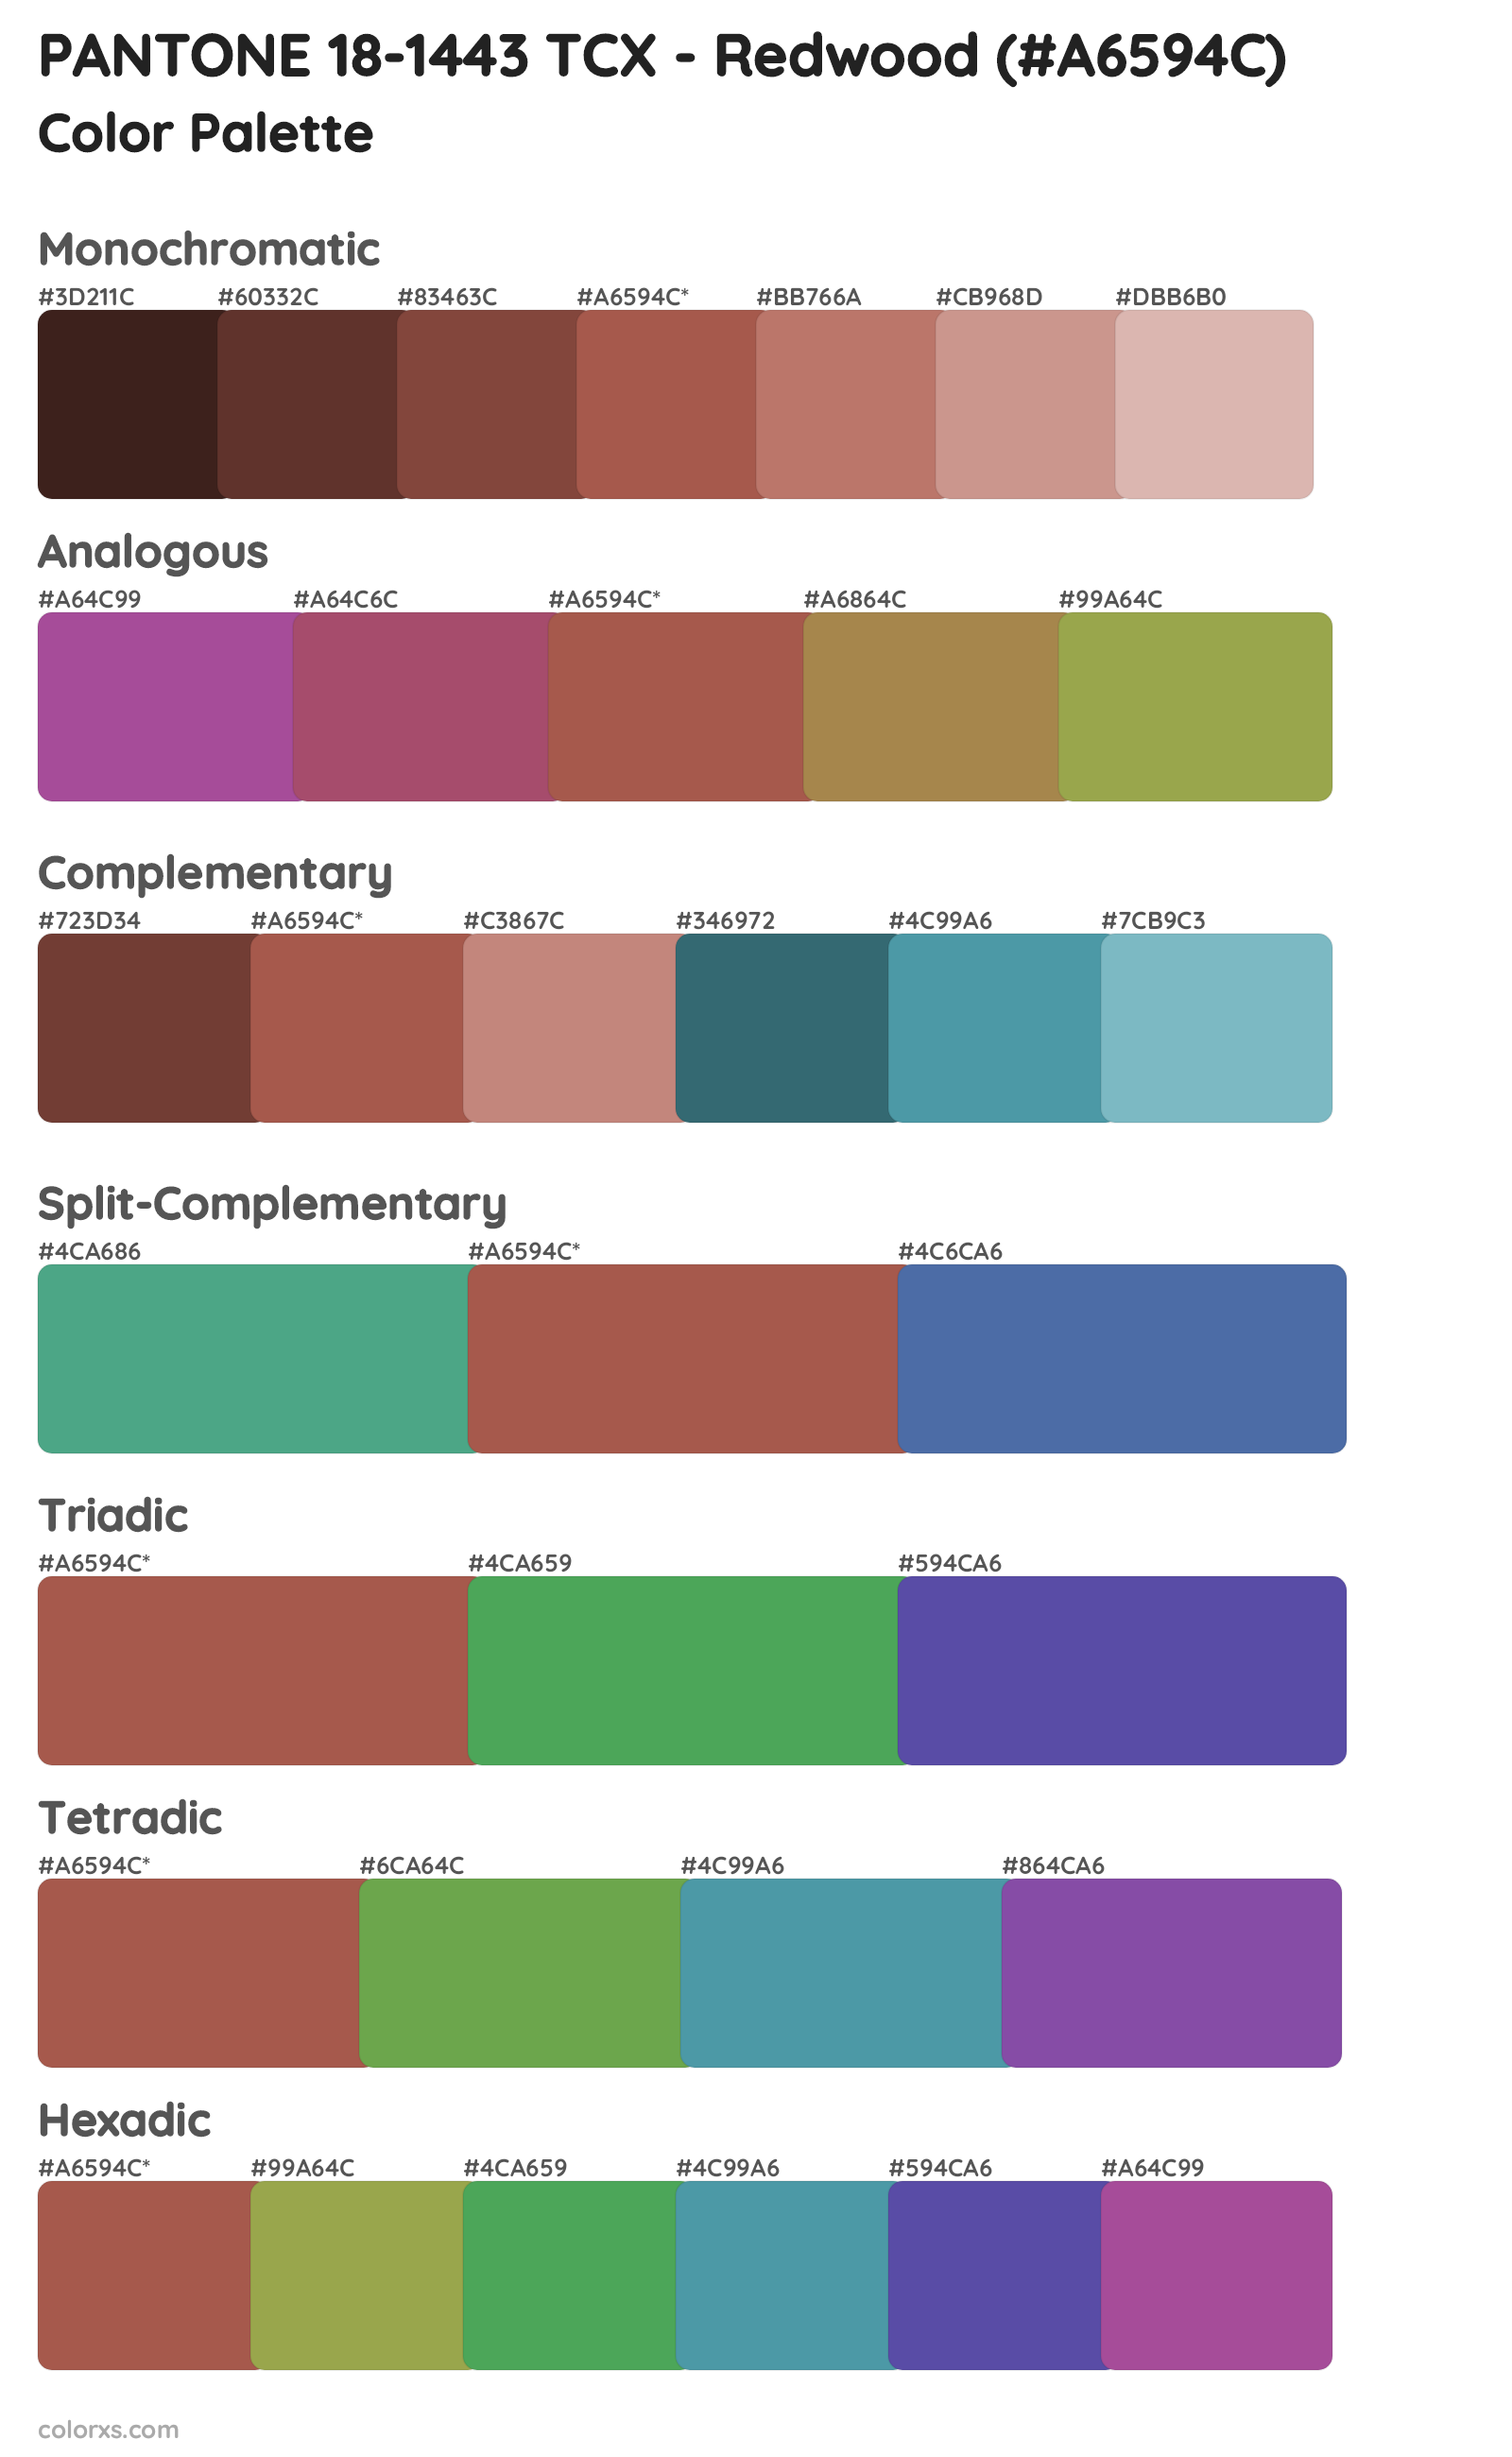 PANTONE 18-1443 TCX - Redwood Color Scheme Palettes